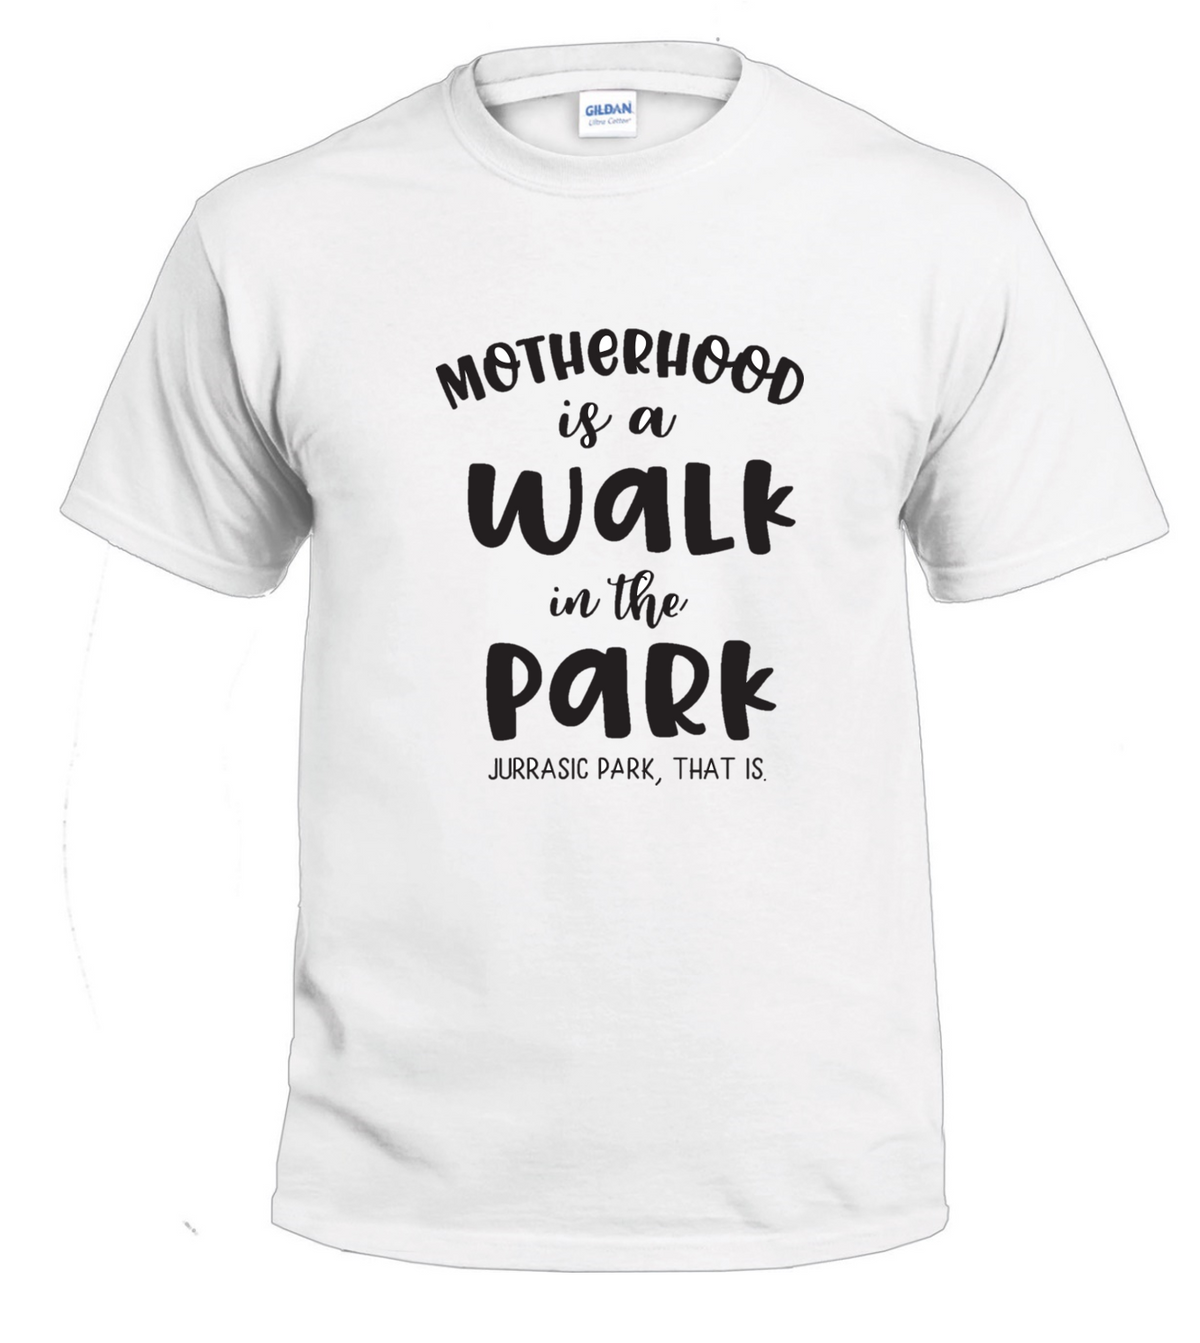 Motherhood is a Walk in the Park t-shirt